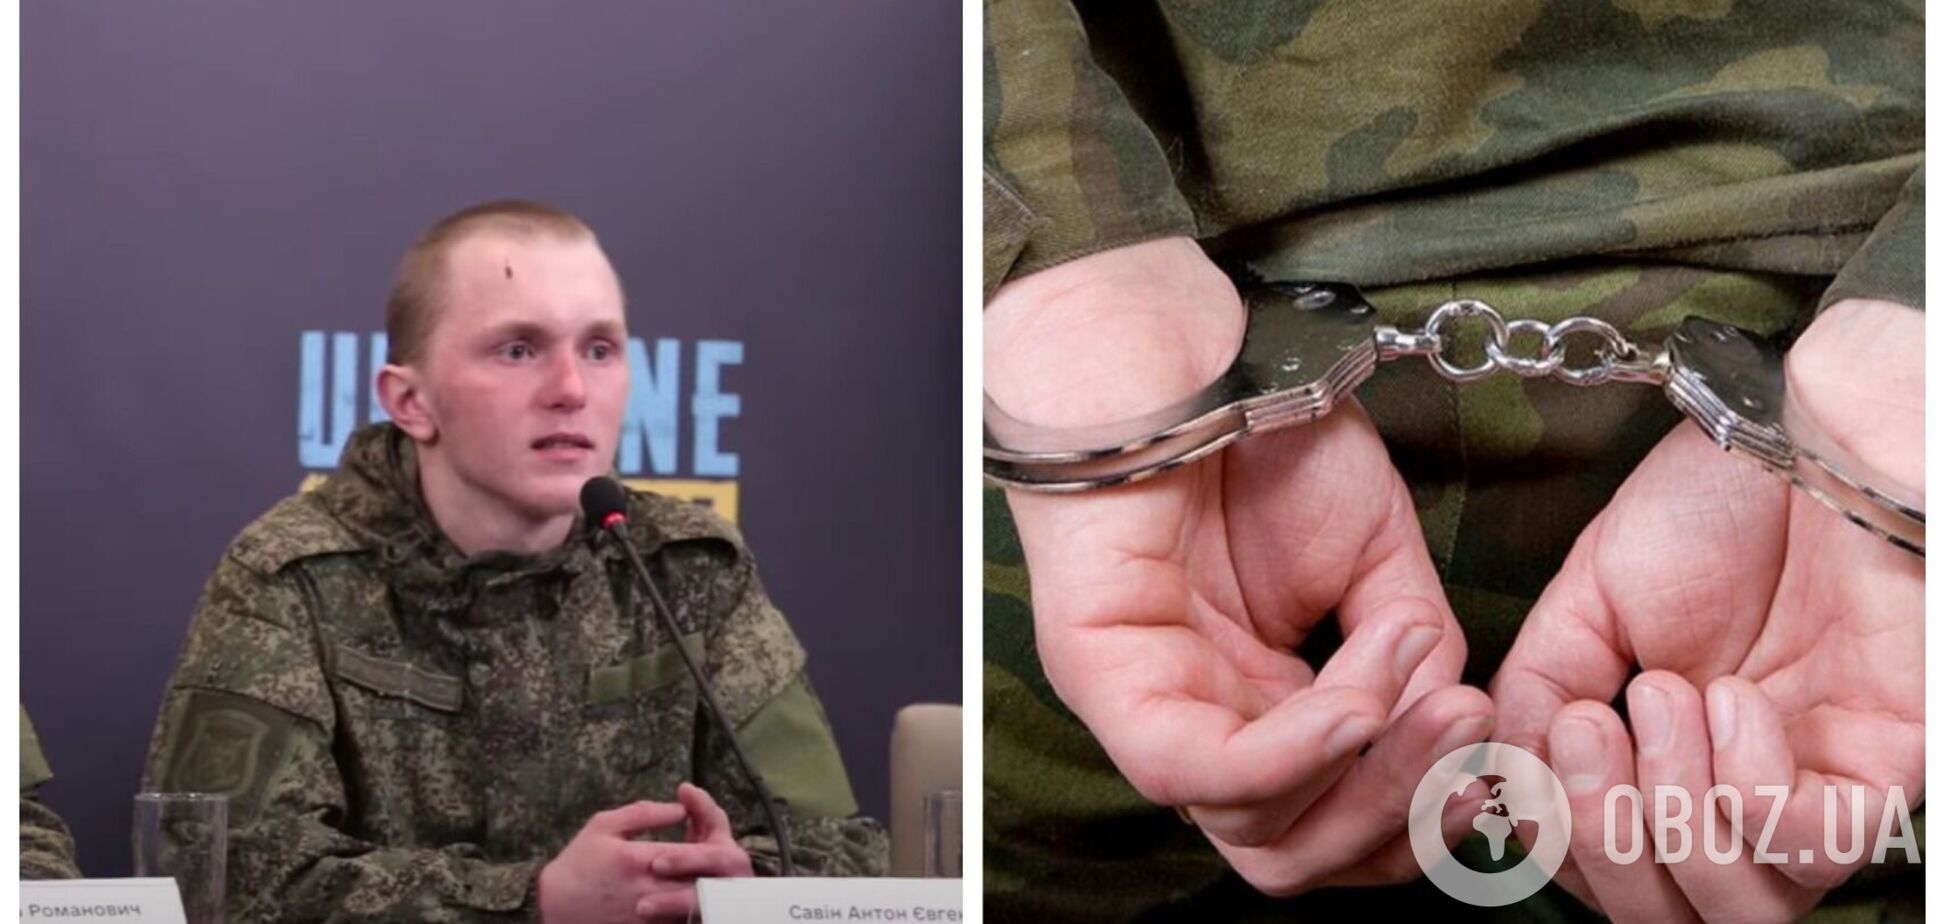 'Мы разрушили мир в вашей стране': пленный российский оккупант заявил, что власть России должна уйти в отставку. Видео